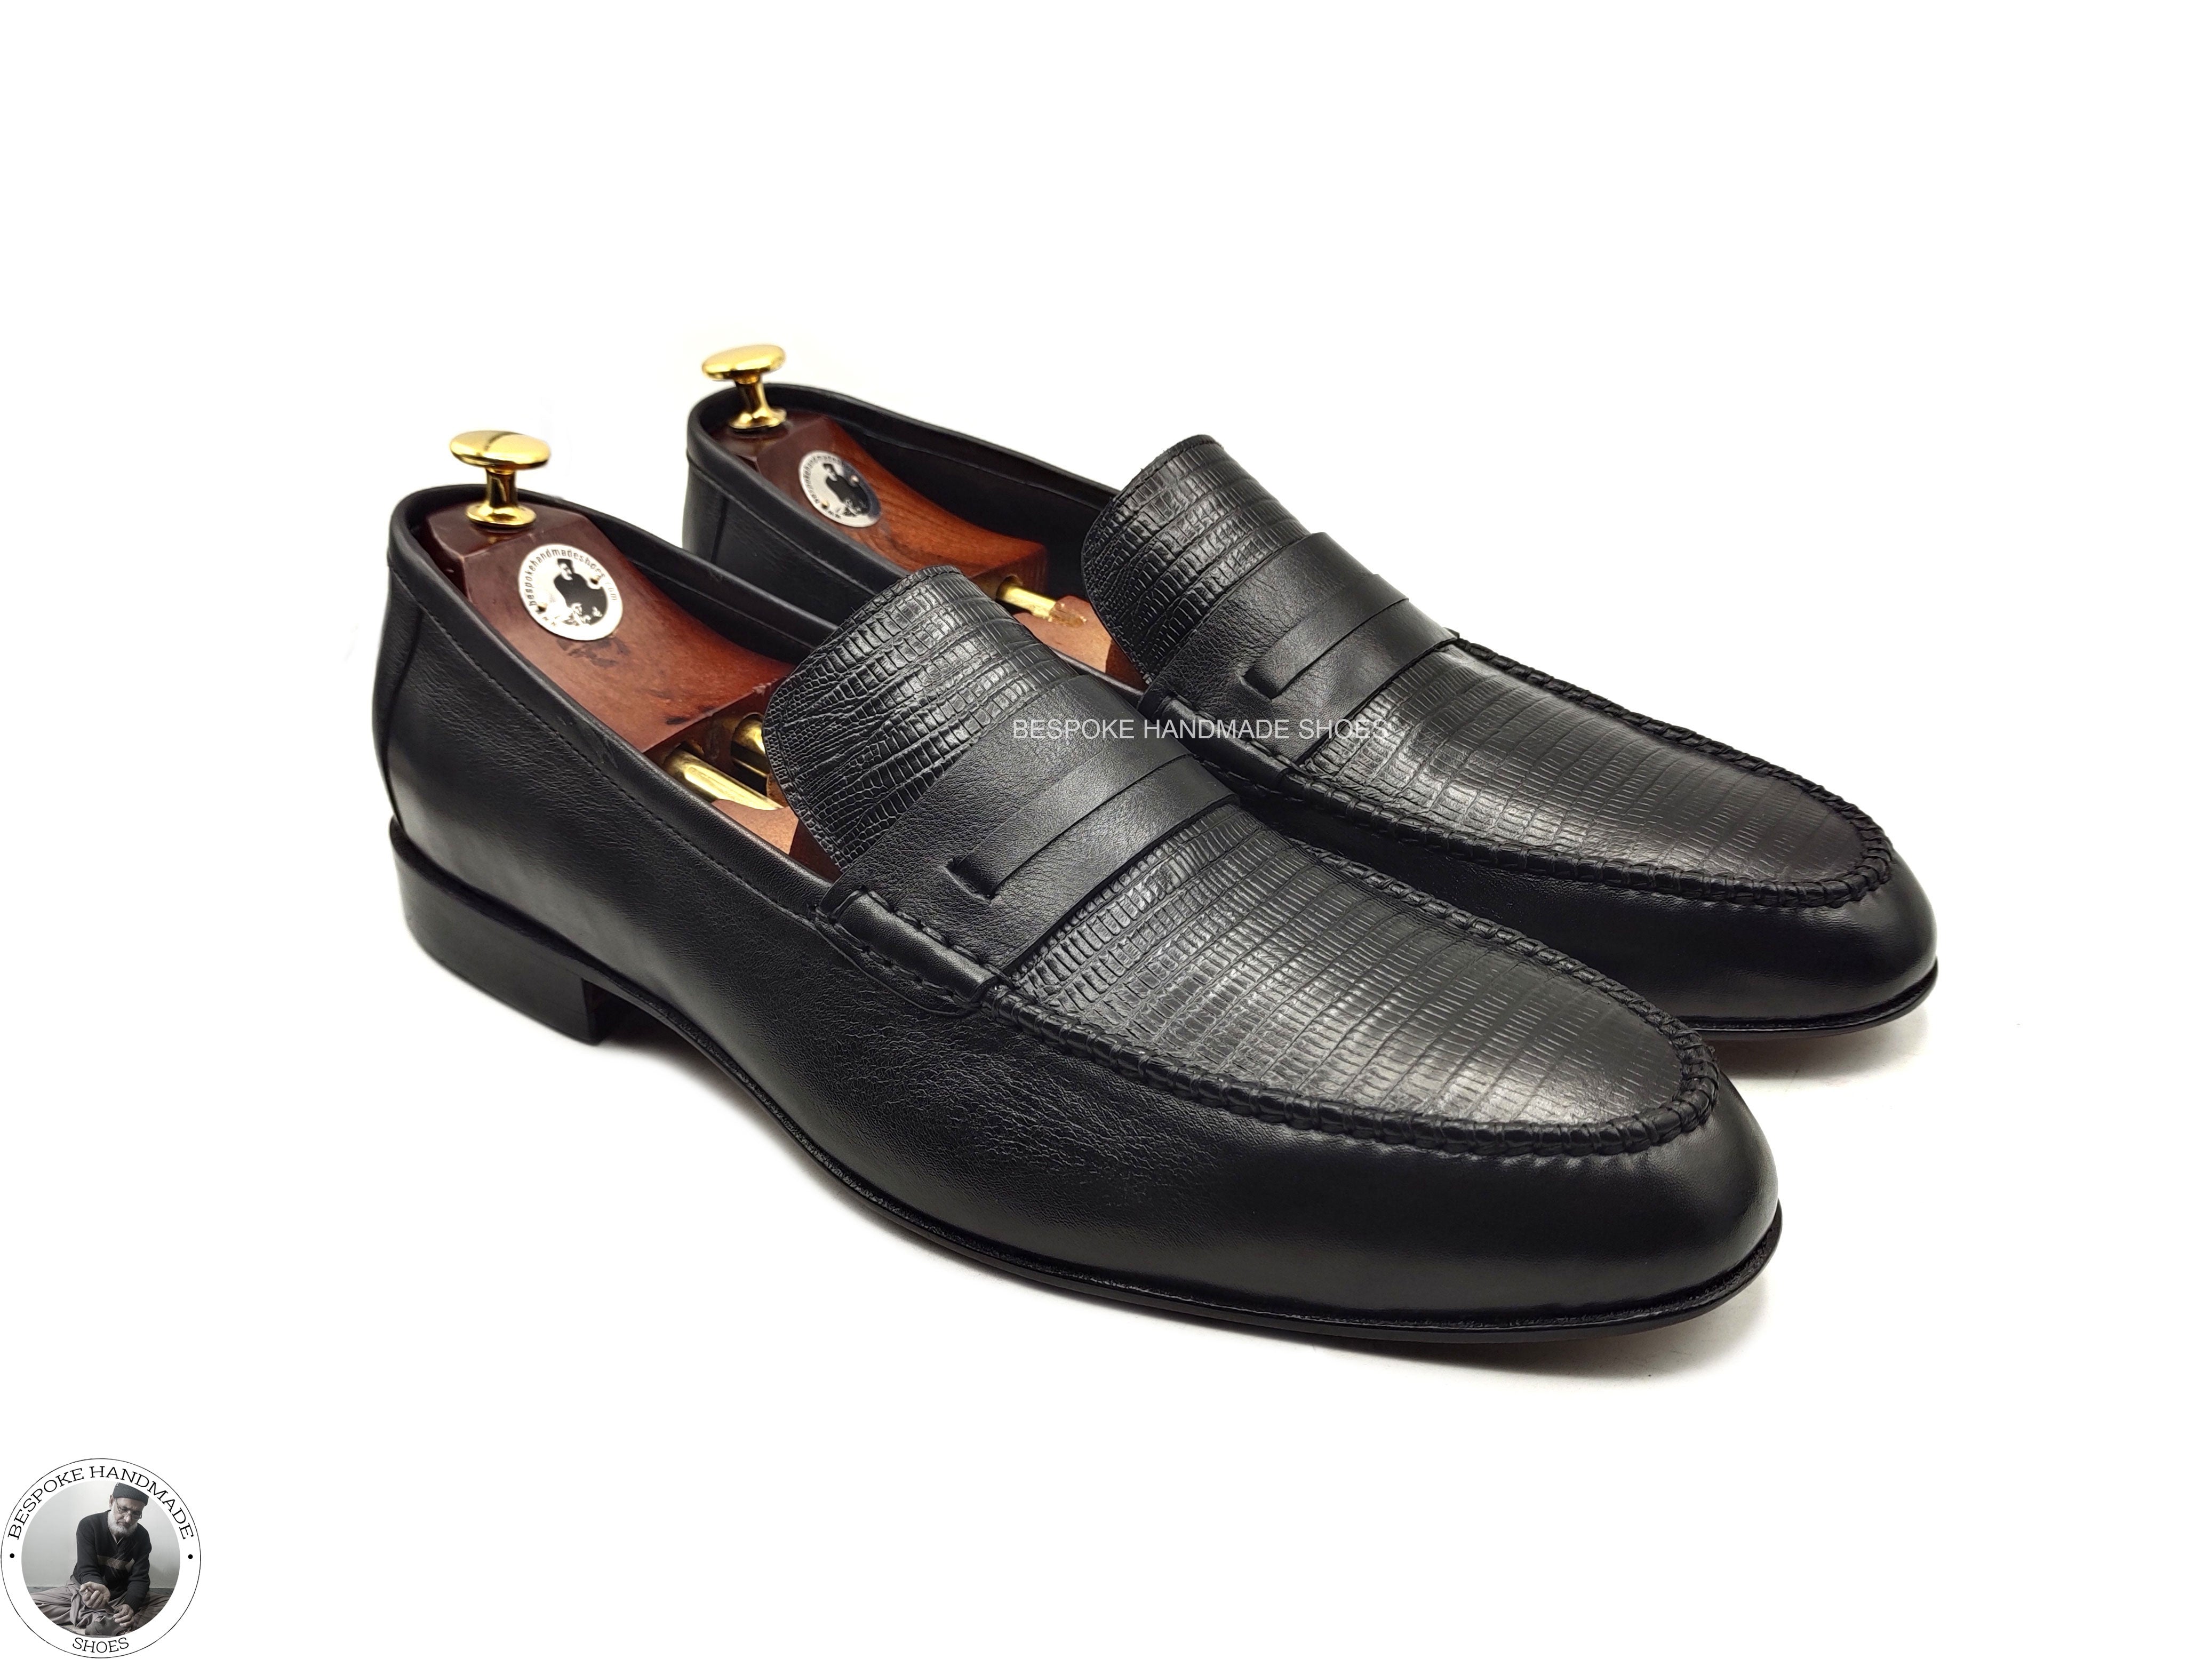 New Men's Handmade Black Color Slip on Loafer Moccasian Dress / Formal Shoes